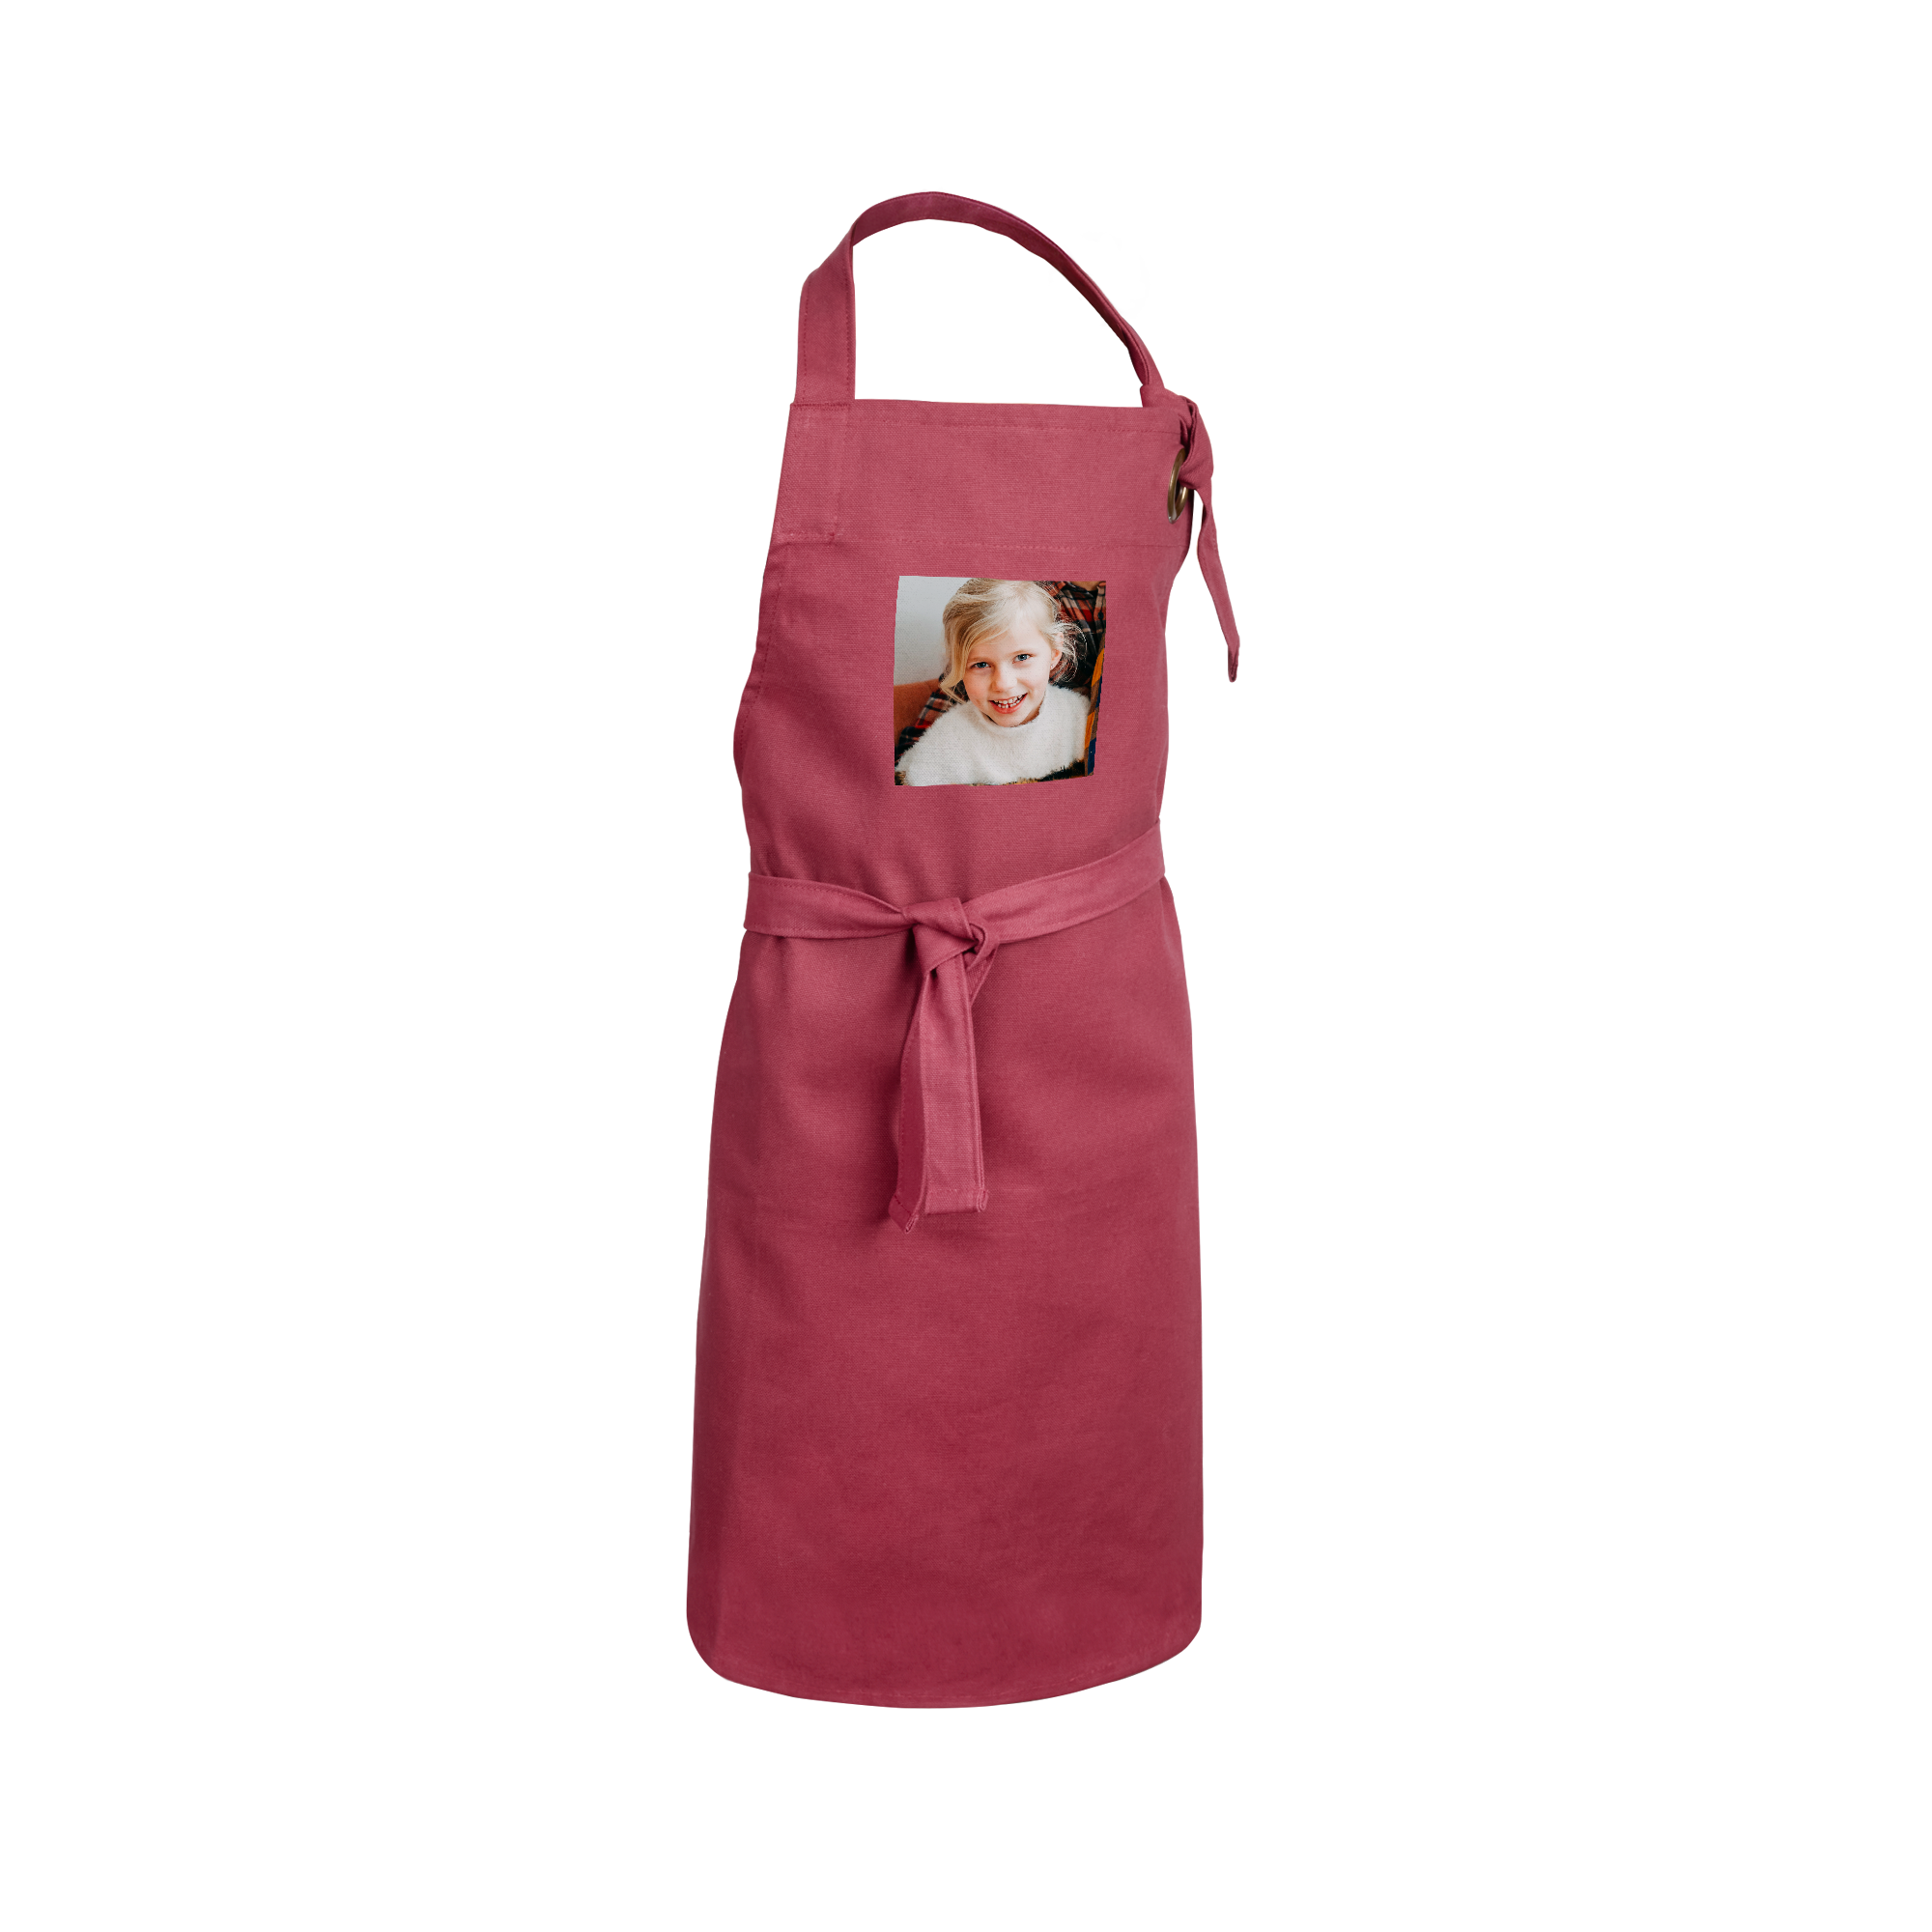 Children's apron - Burgundy